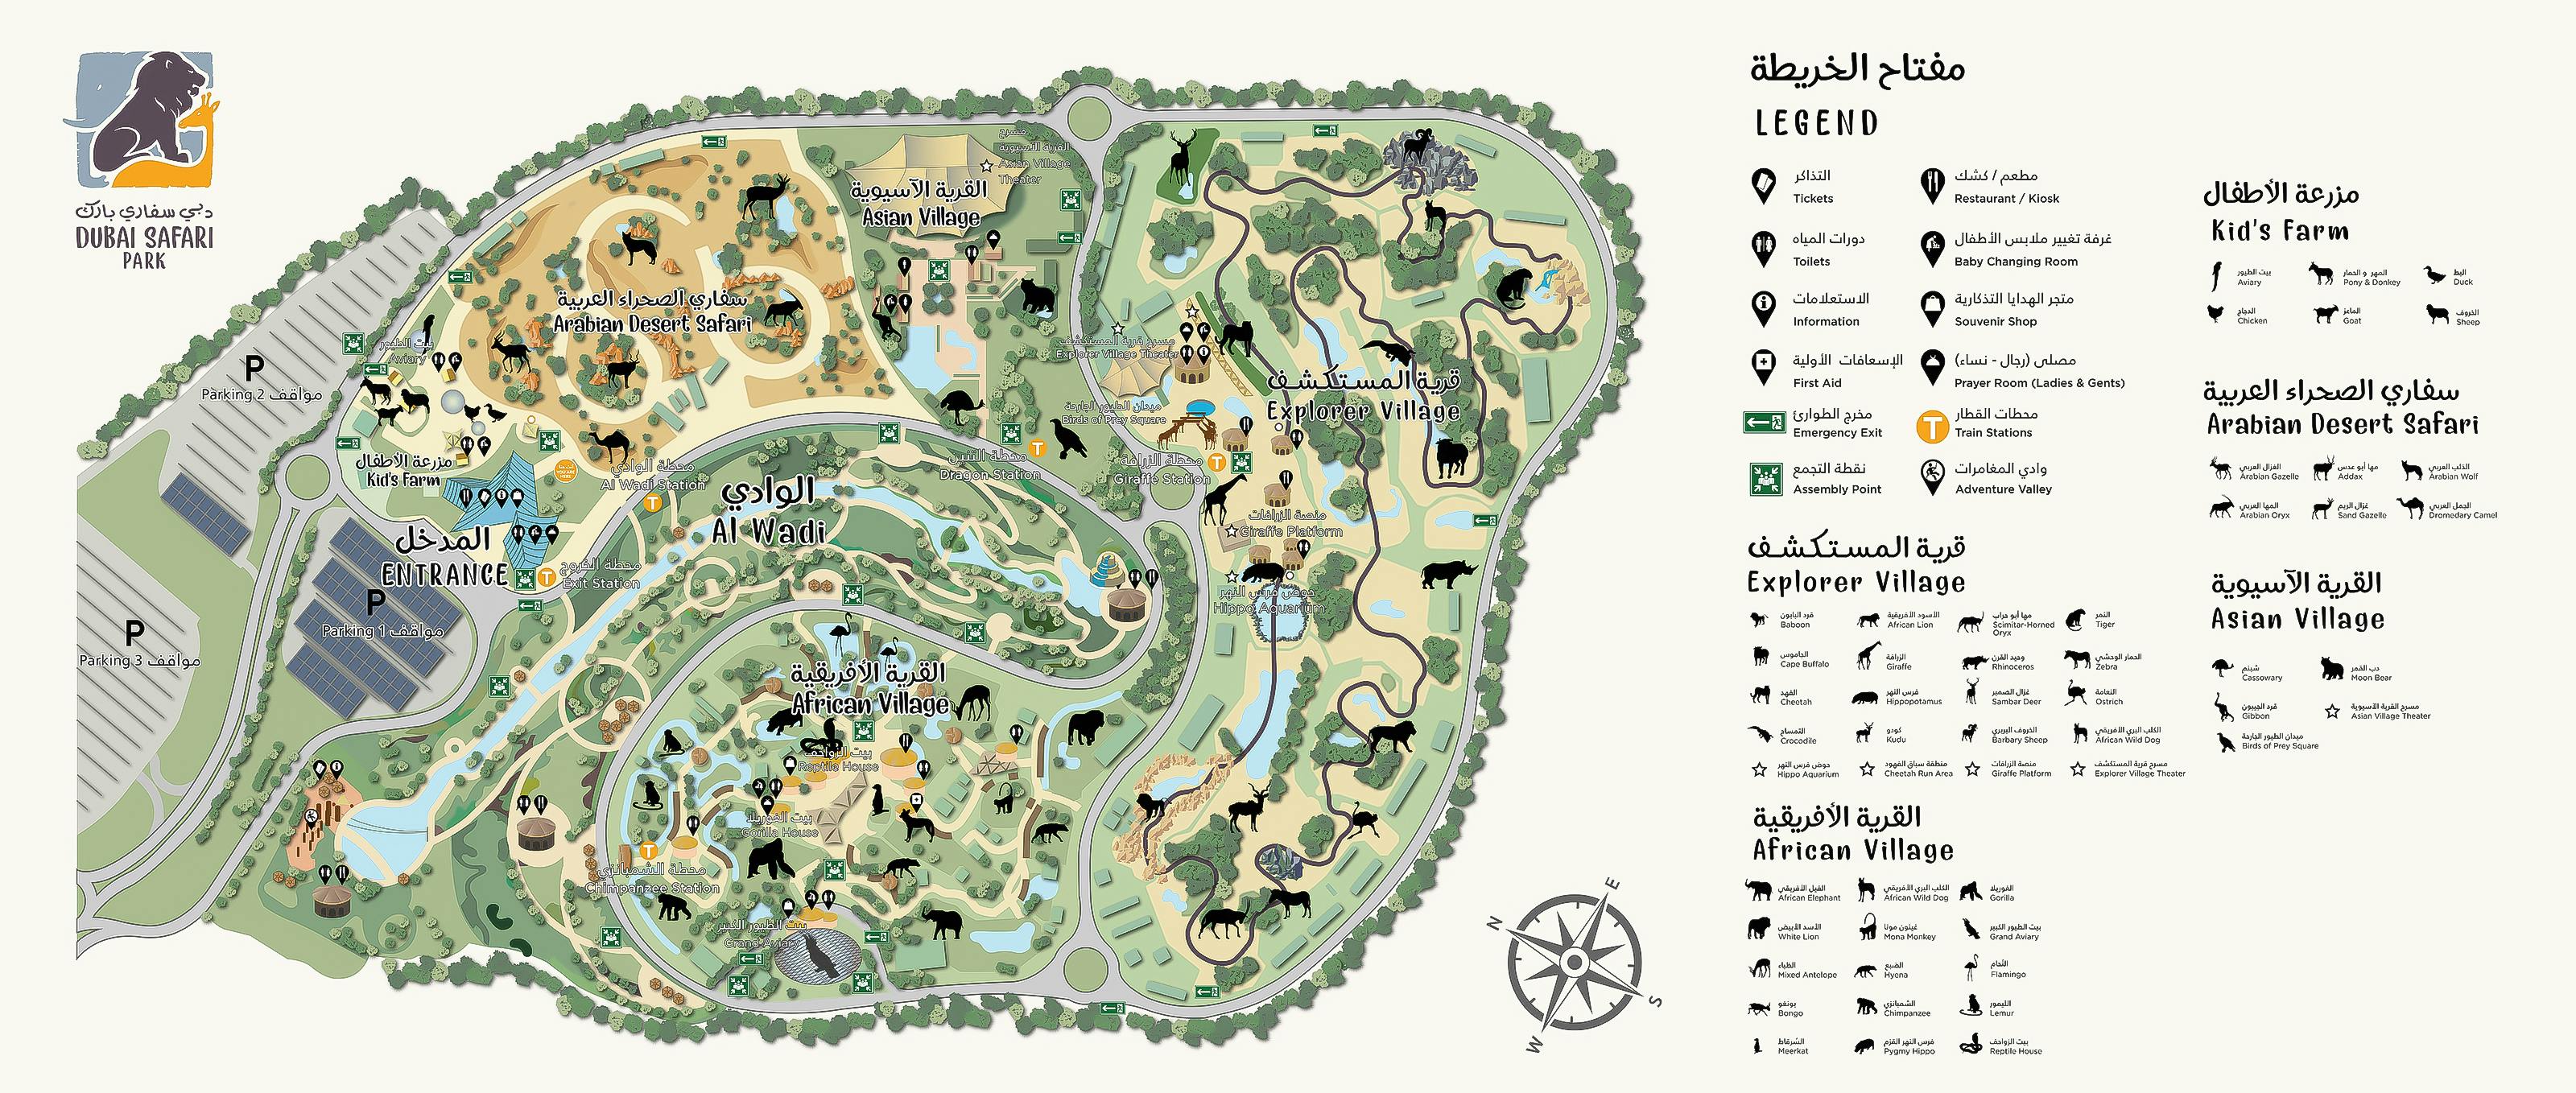 dubai safari park plan